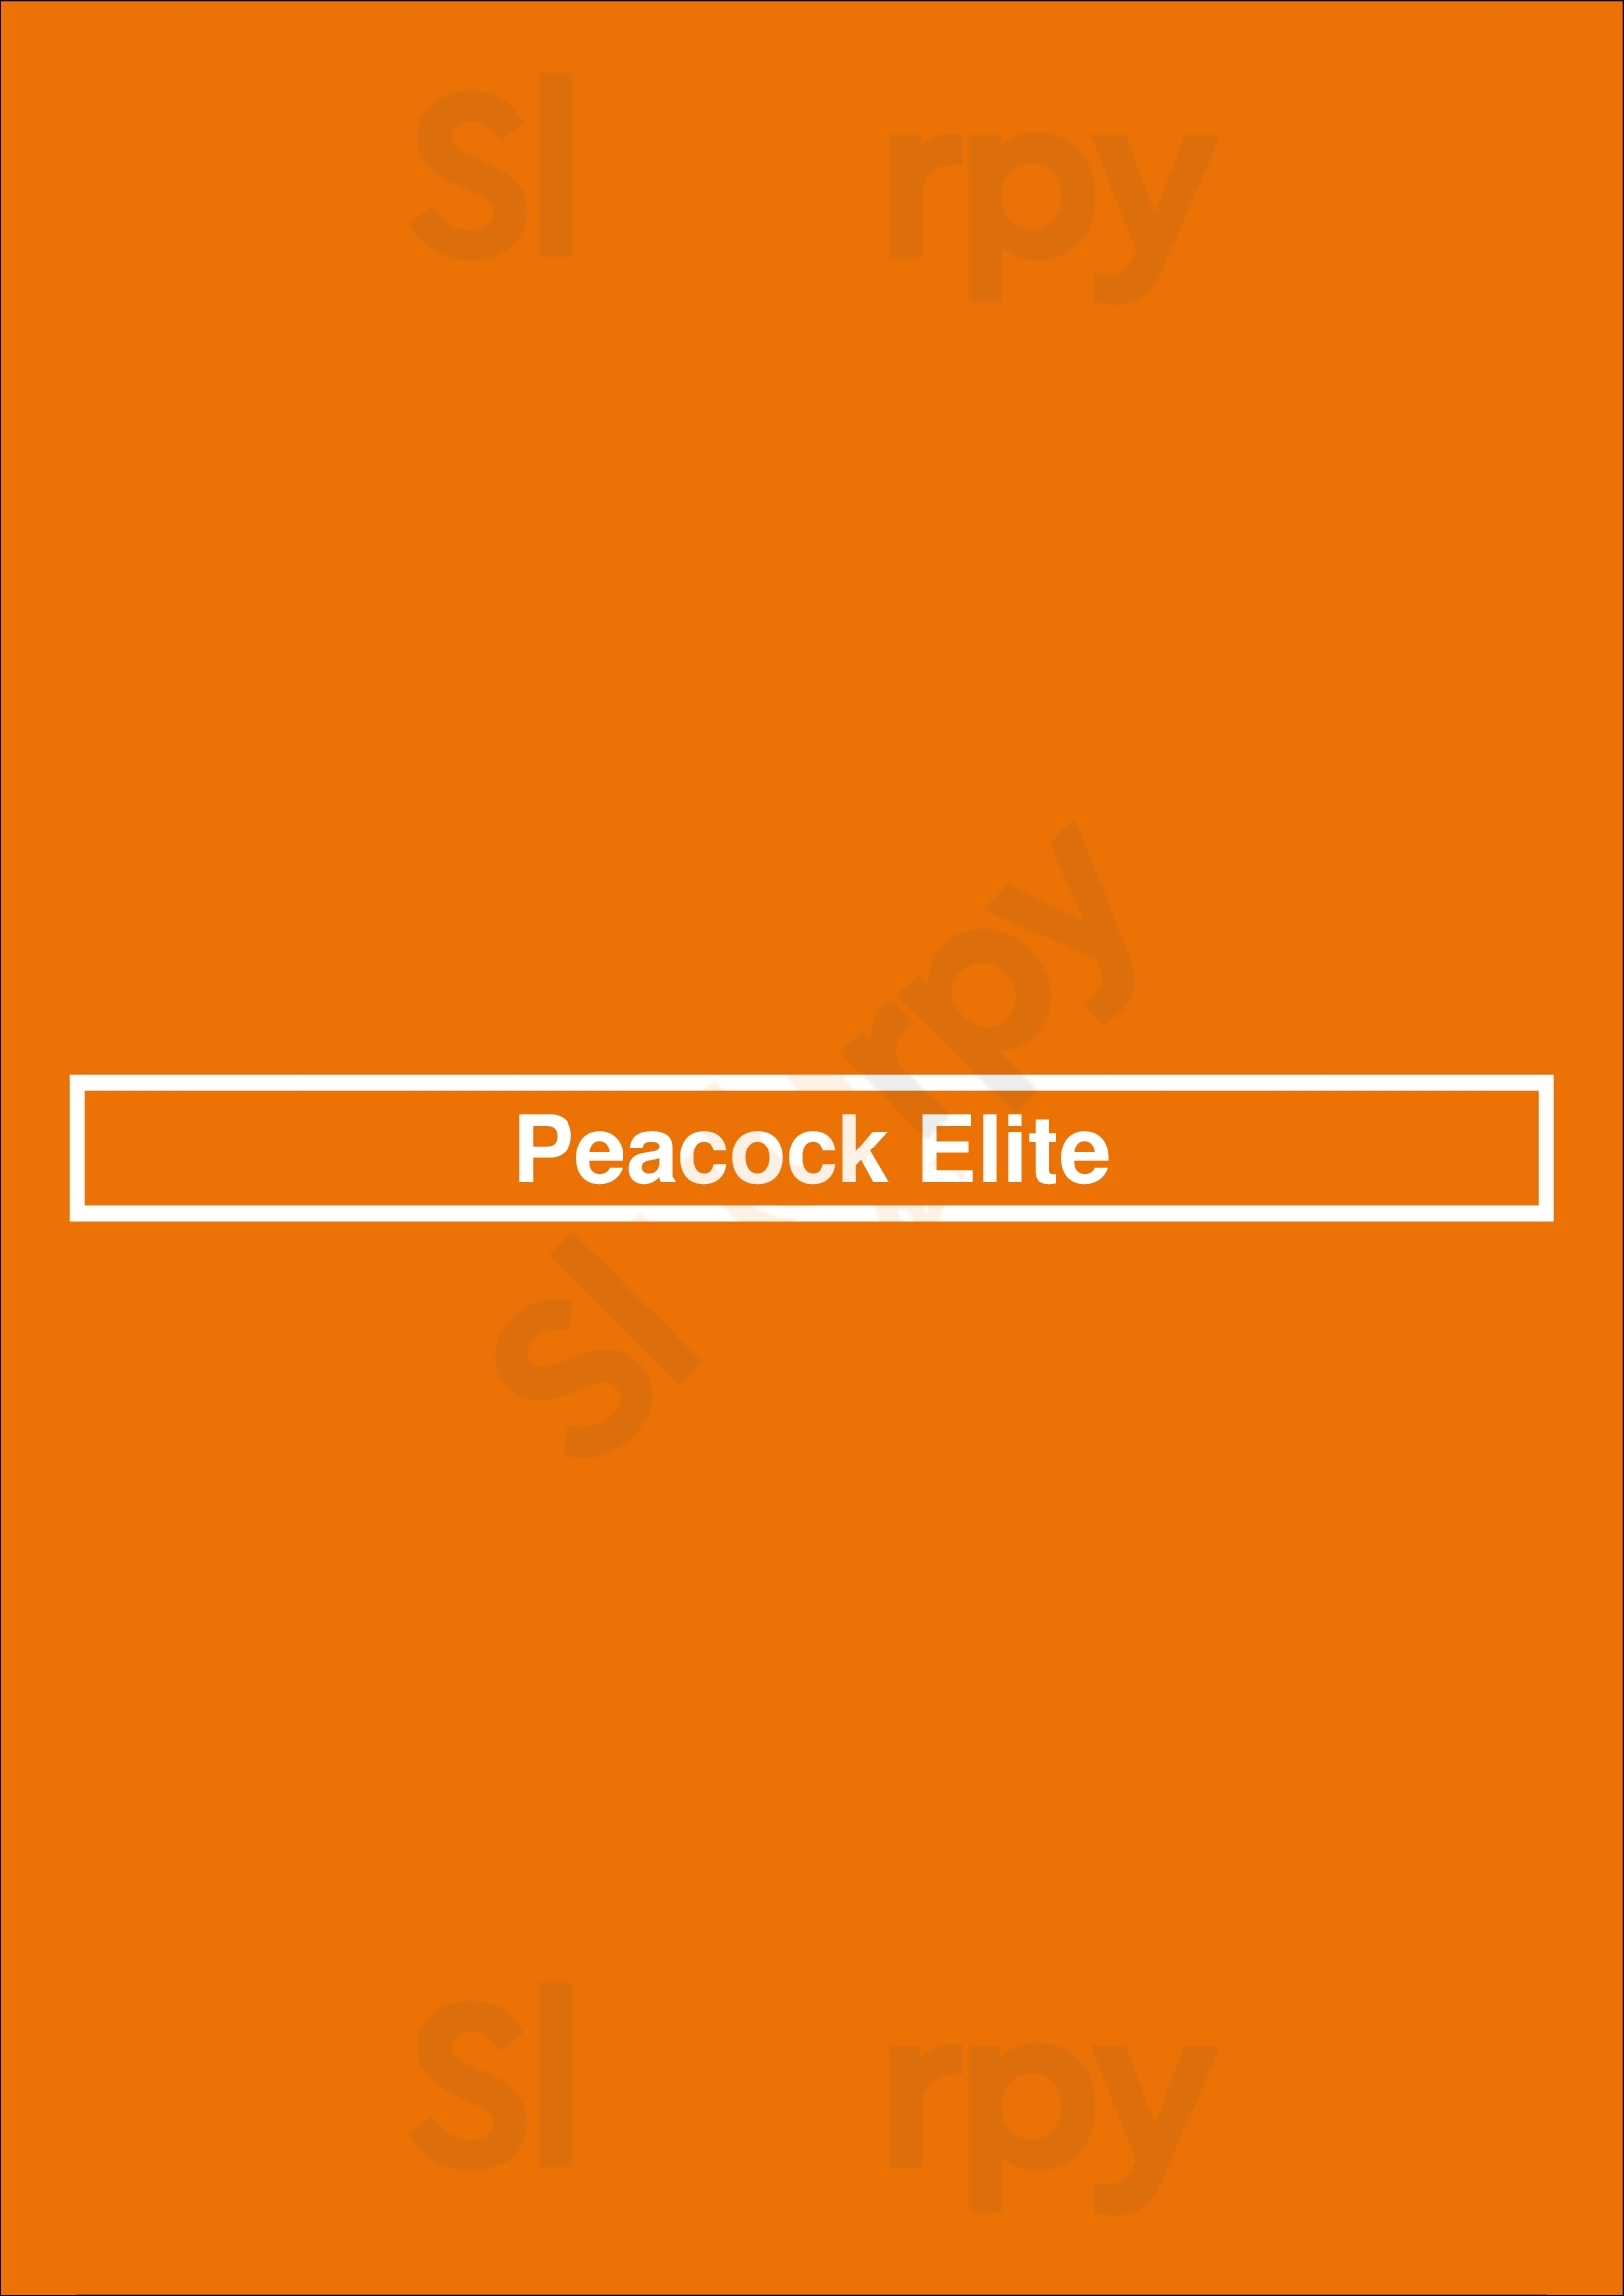 Peacock Elite Plano Menu - 1